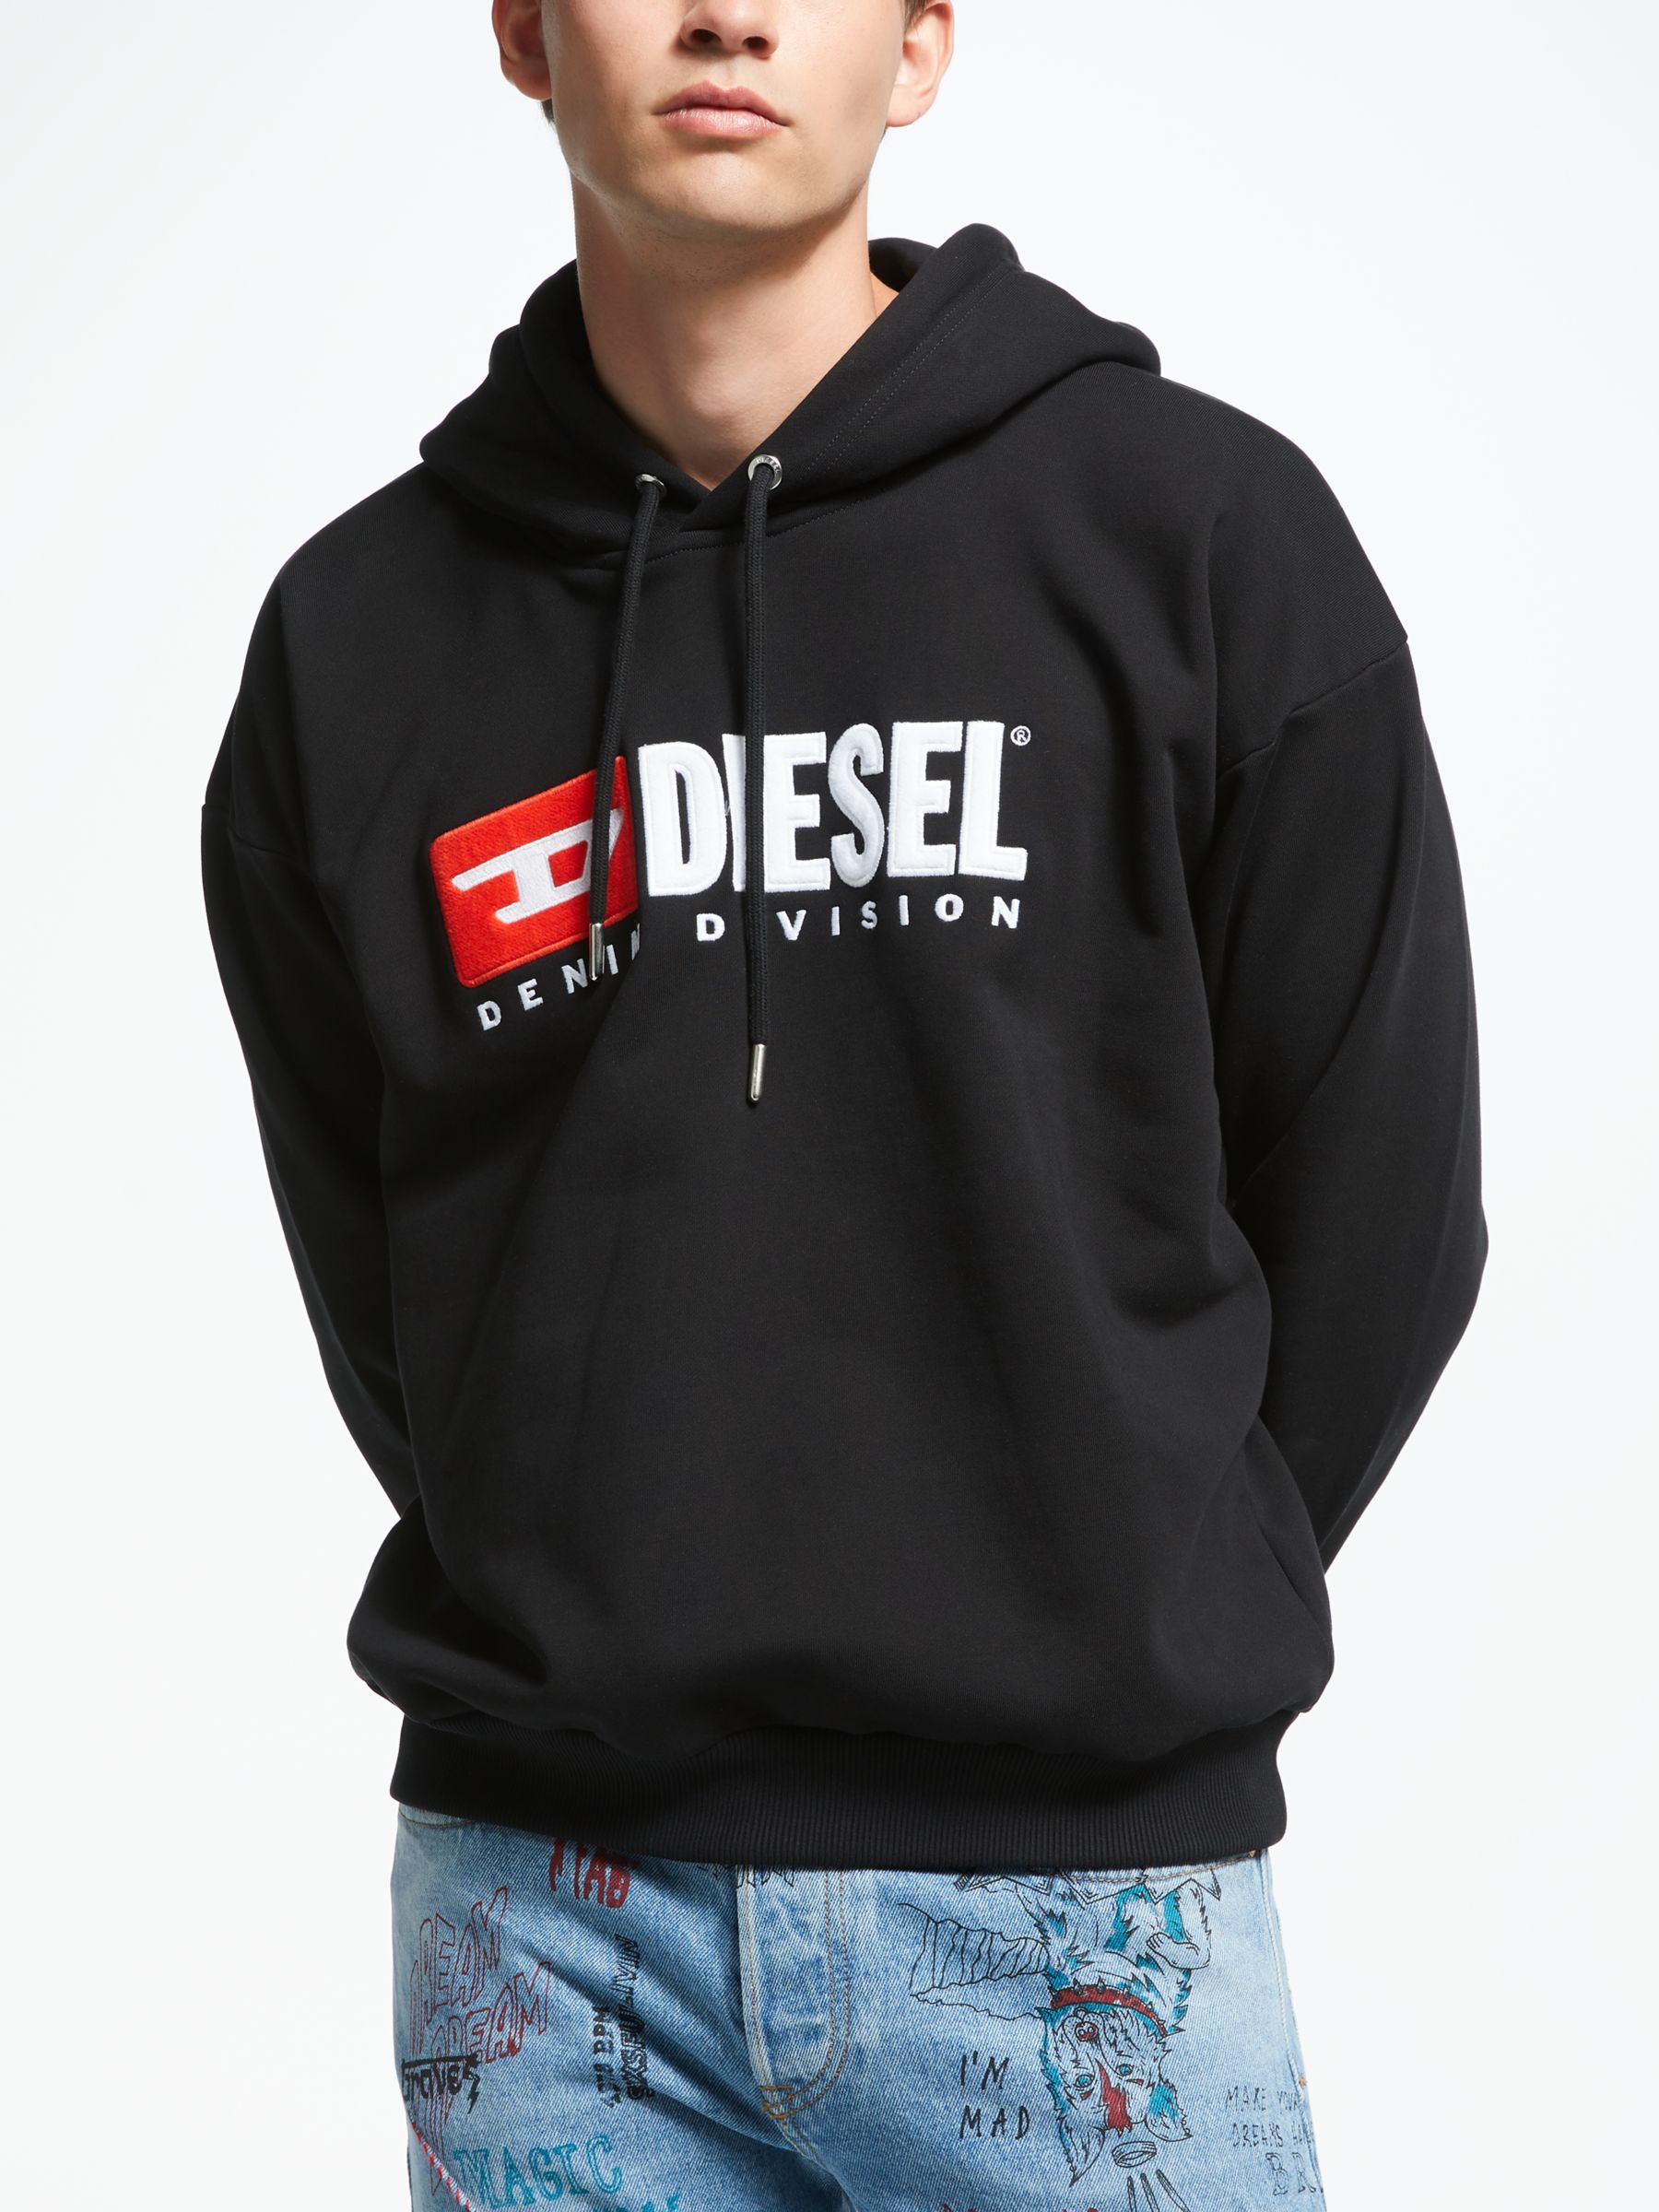 diesel denim division sweatshirt